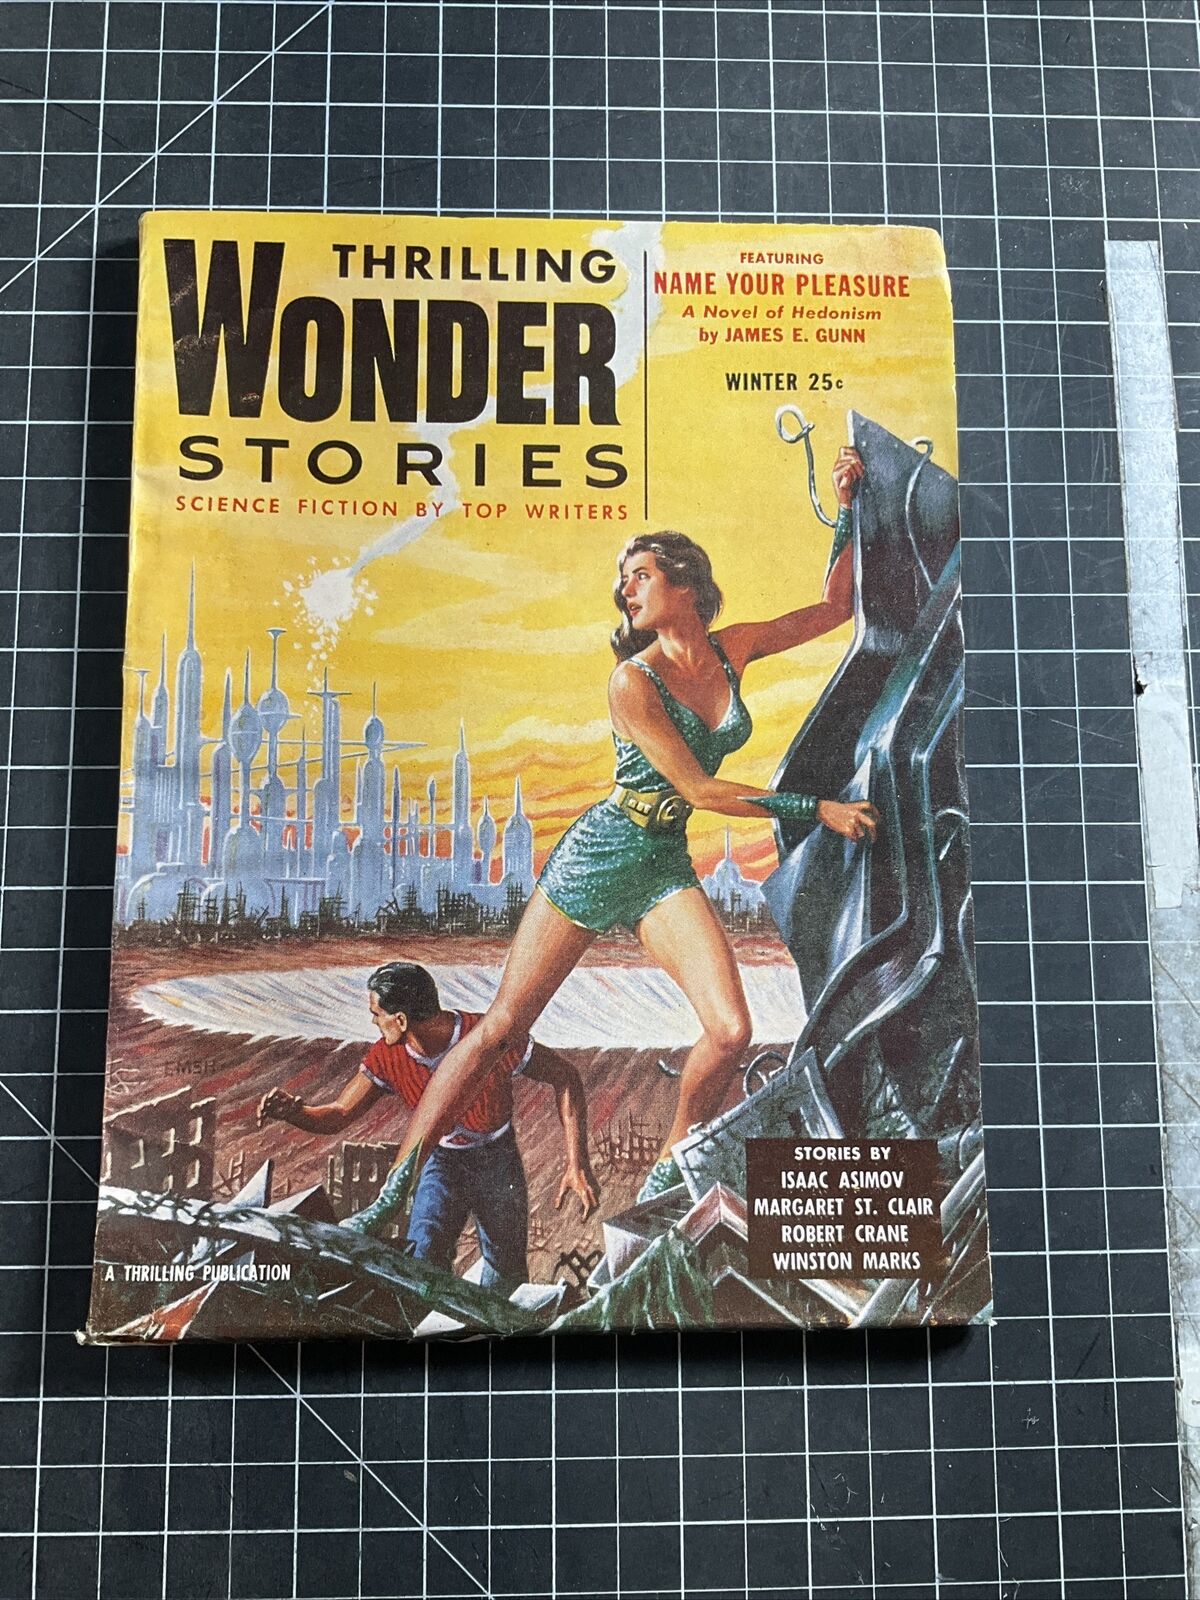 Thrilling Wonder Stories Vol. 44 #3-Winter 1955-